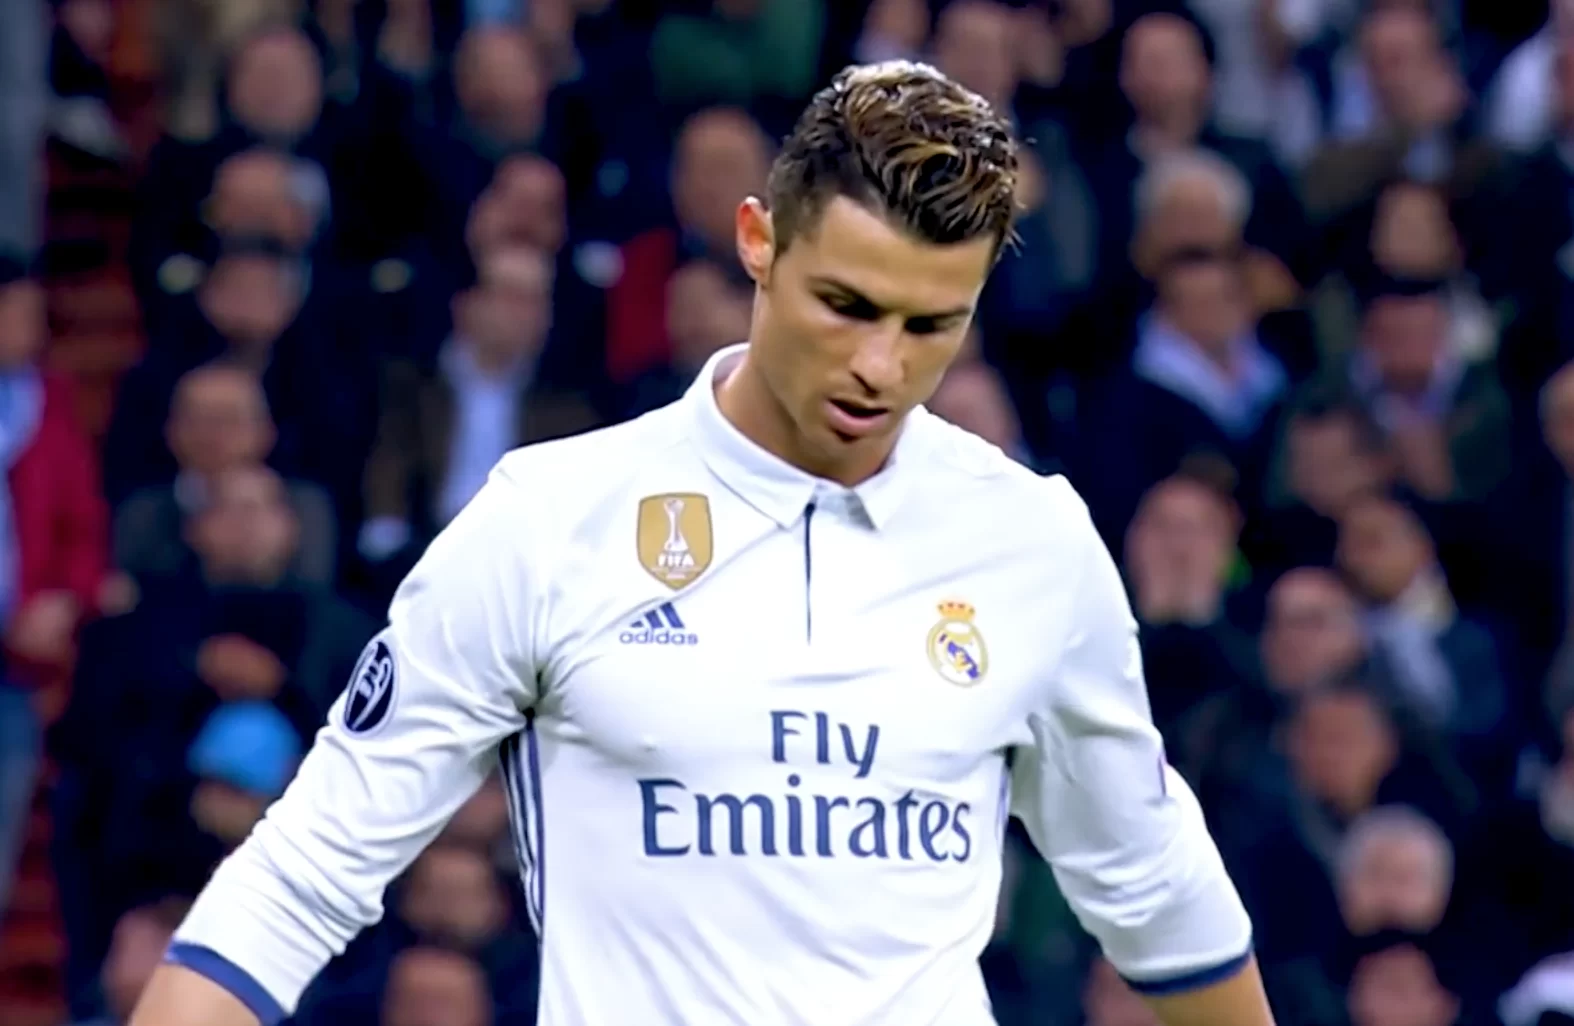 Rassegna stampa: Ronaldo-Dybala prove di intesa, Tutti pazzi per Kean, Pjanic rinnovo vicino.